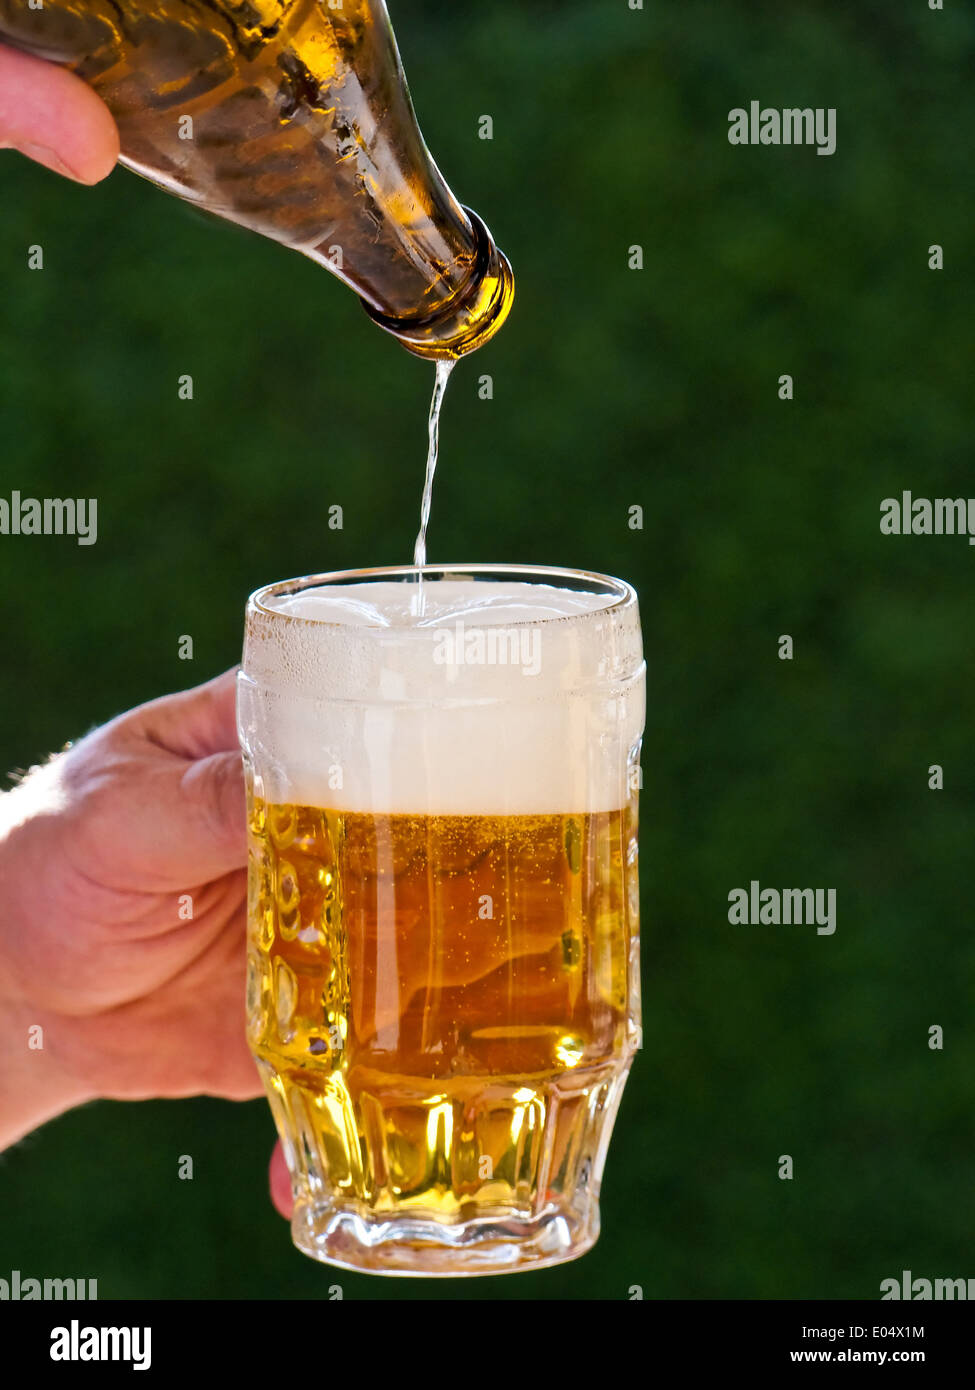 Fresh beer from a beer bottle is poured out in beer glass, Frisches Bier aus einer Bierflasche wird in Bierglas eingeschenkt Stock Photo